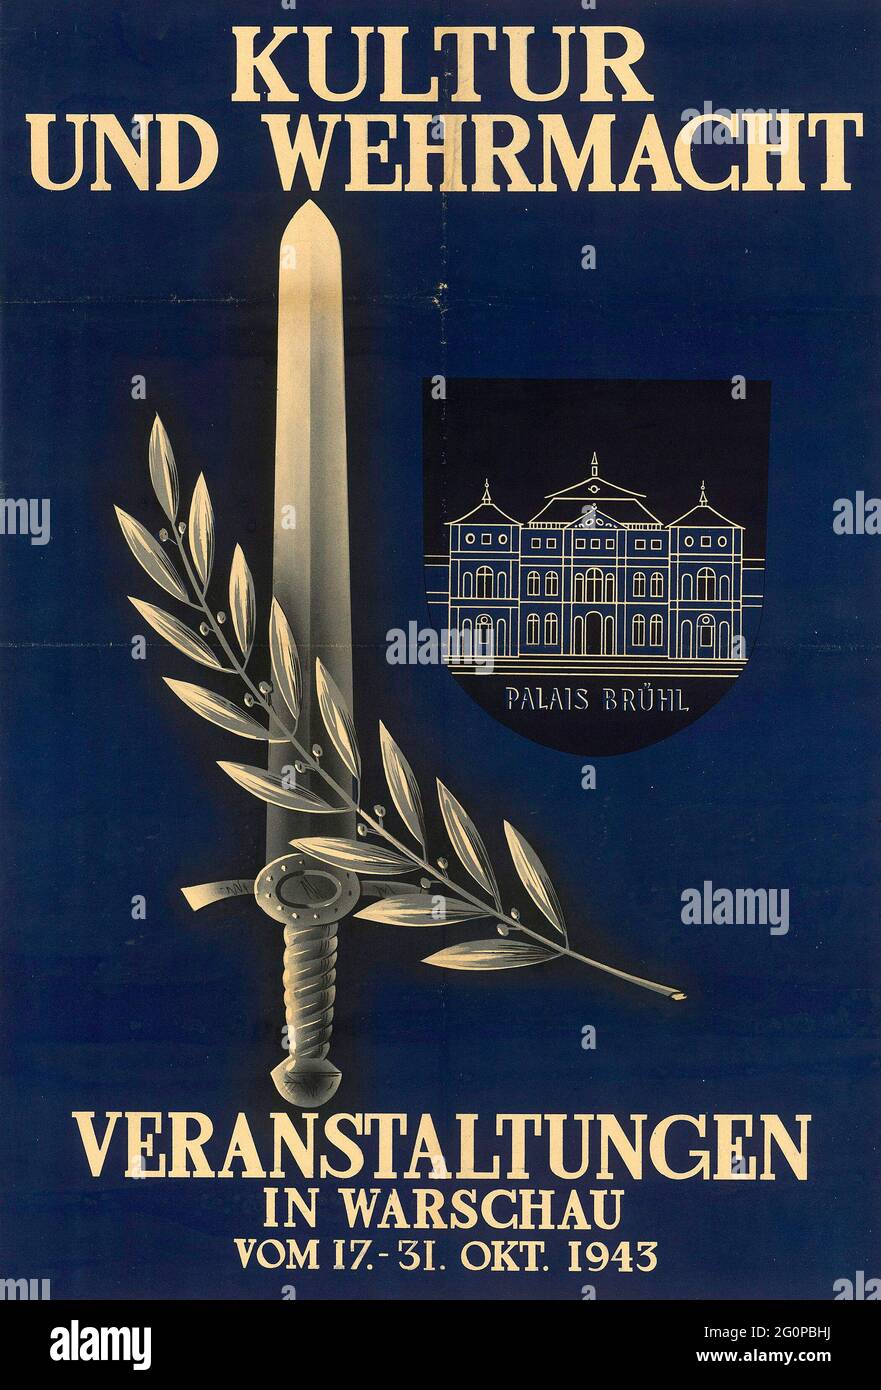 Une affiche de propagande nazie vintage pour les événements culturels et militaires à Varsovie 1943 Banque D'Images